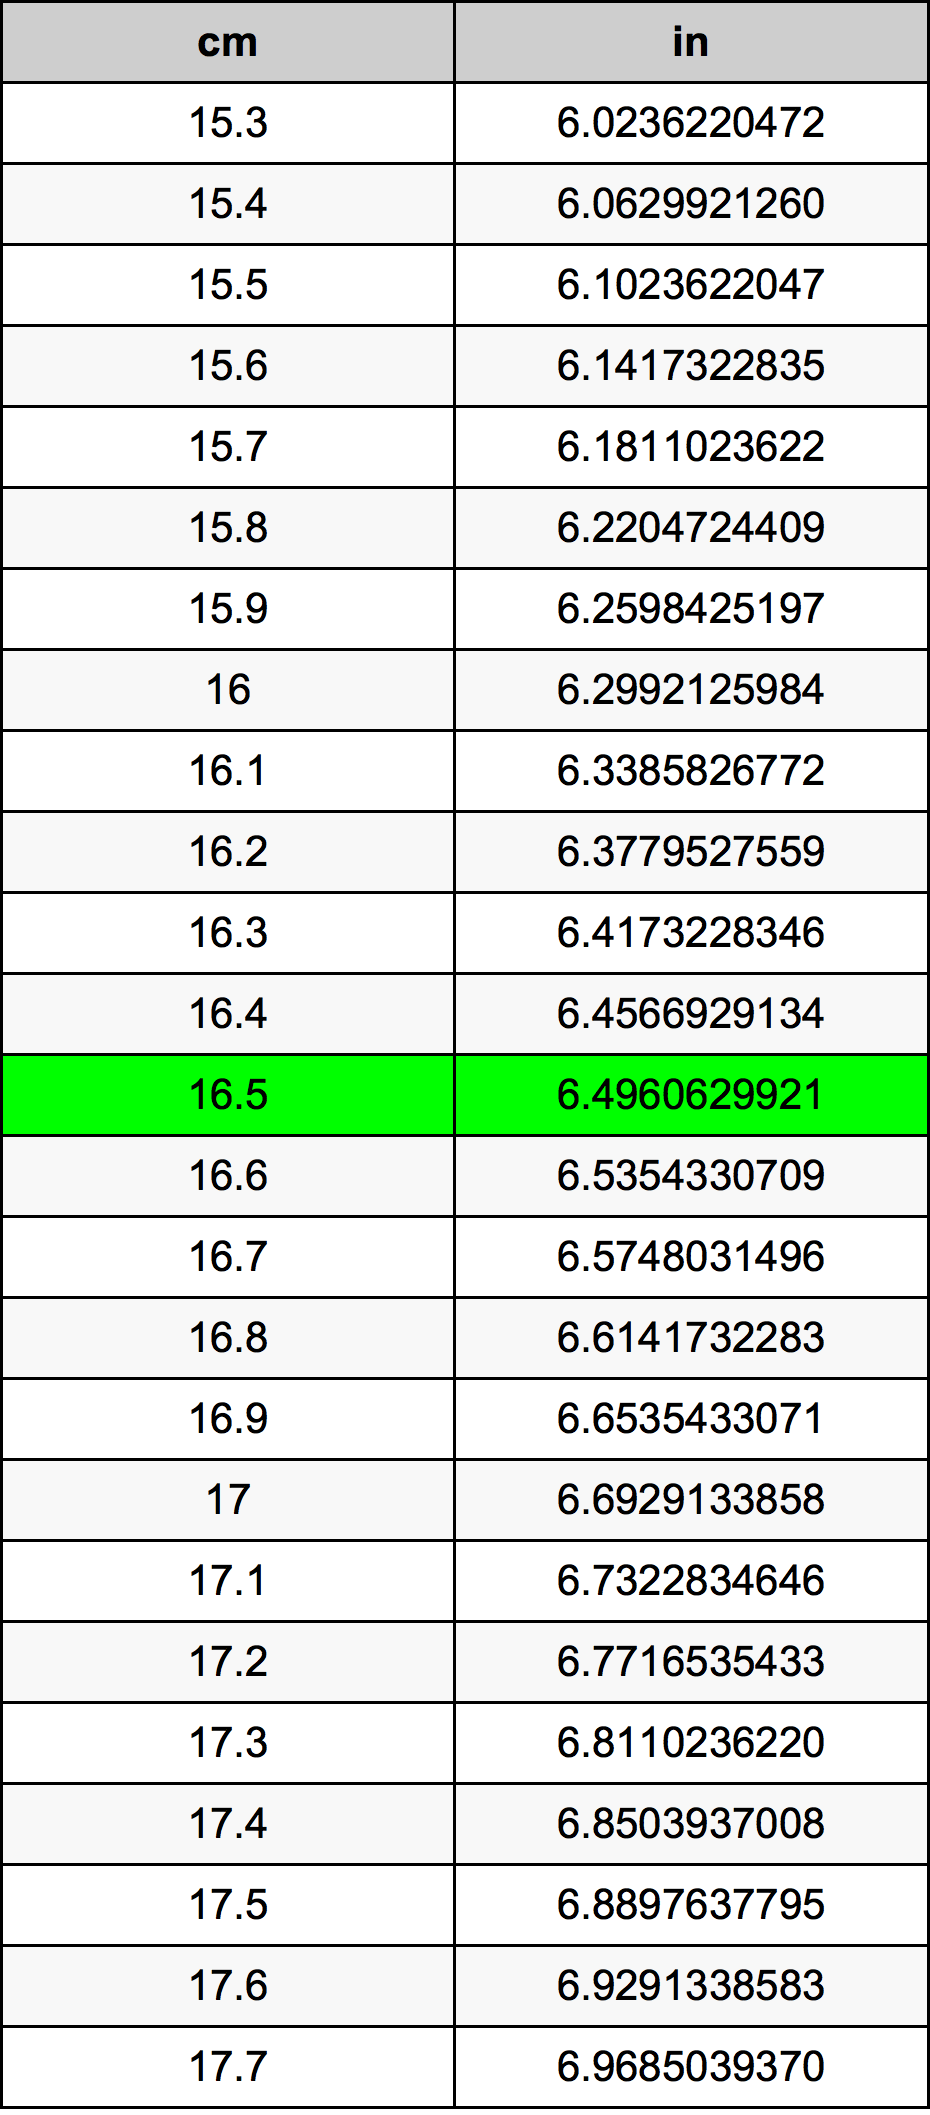 16.5 Centiméter átszámítási táblázat